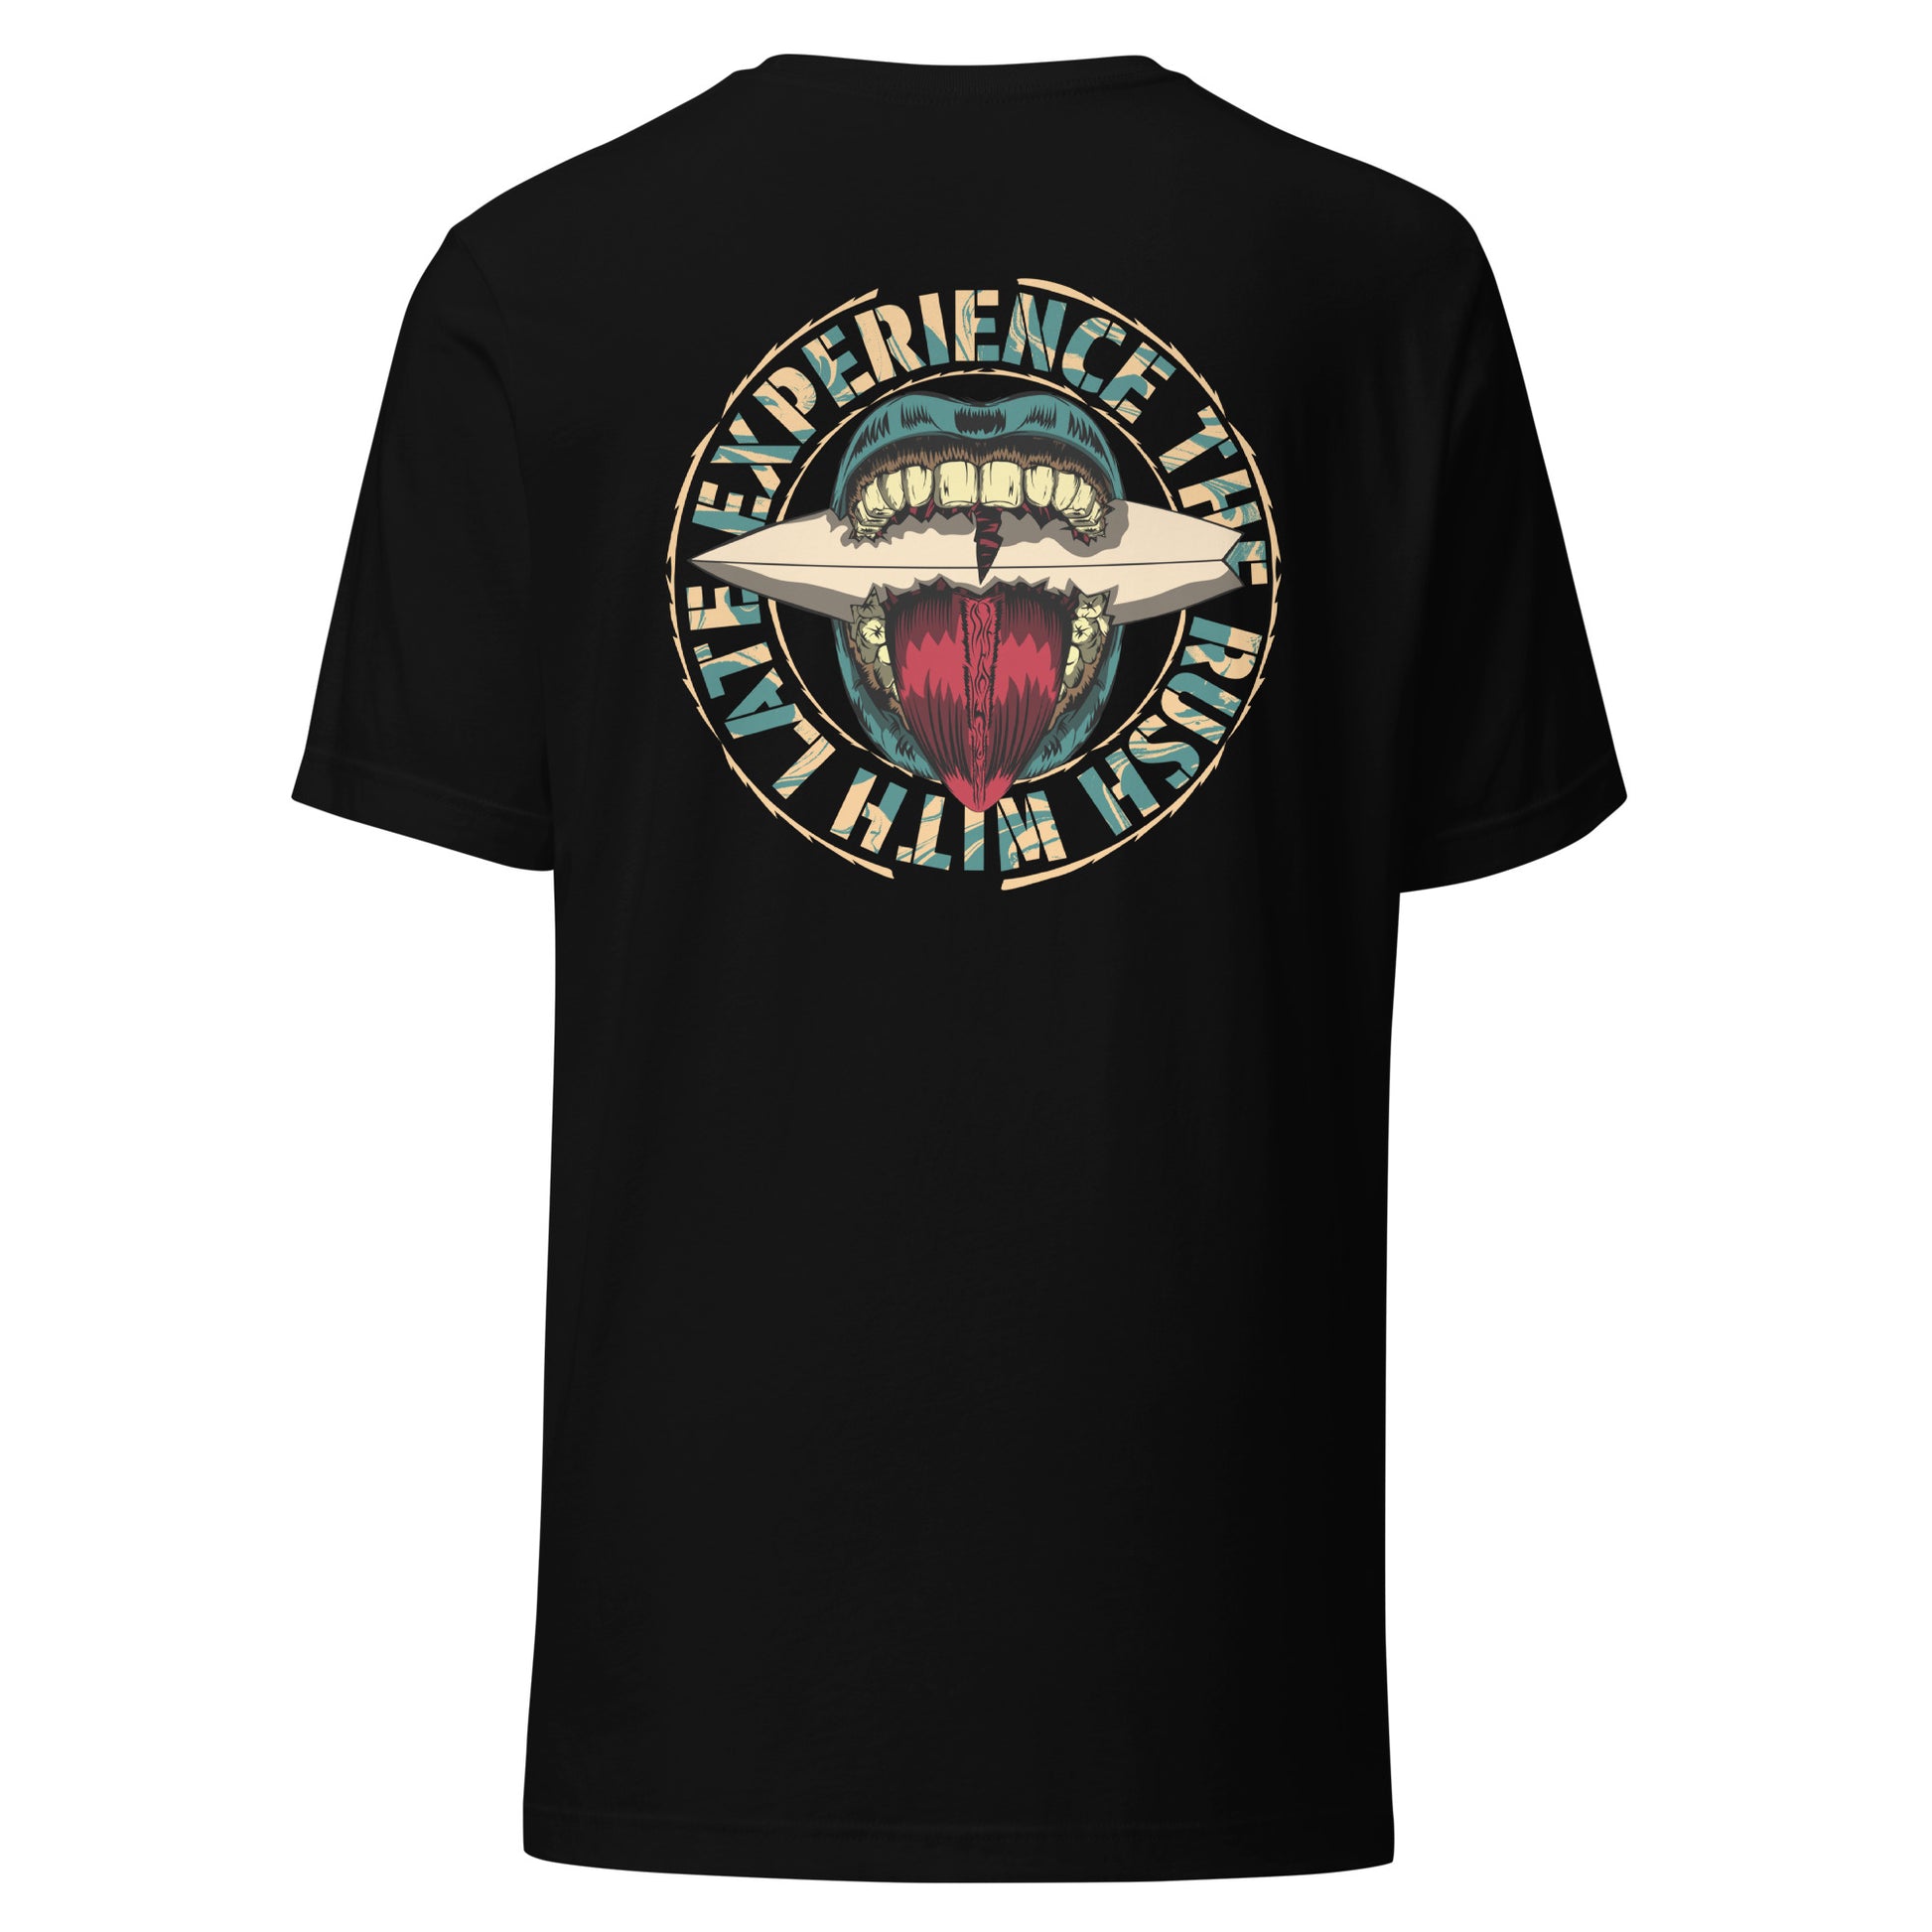 T-Shirt de surfeur style santacruz skateboarding et planche de surf texte experience the rush Late t-shirt dos couleur noir